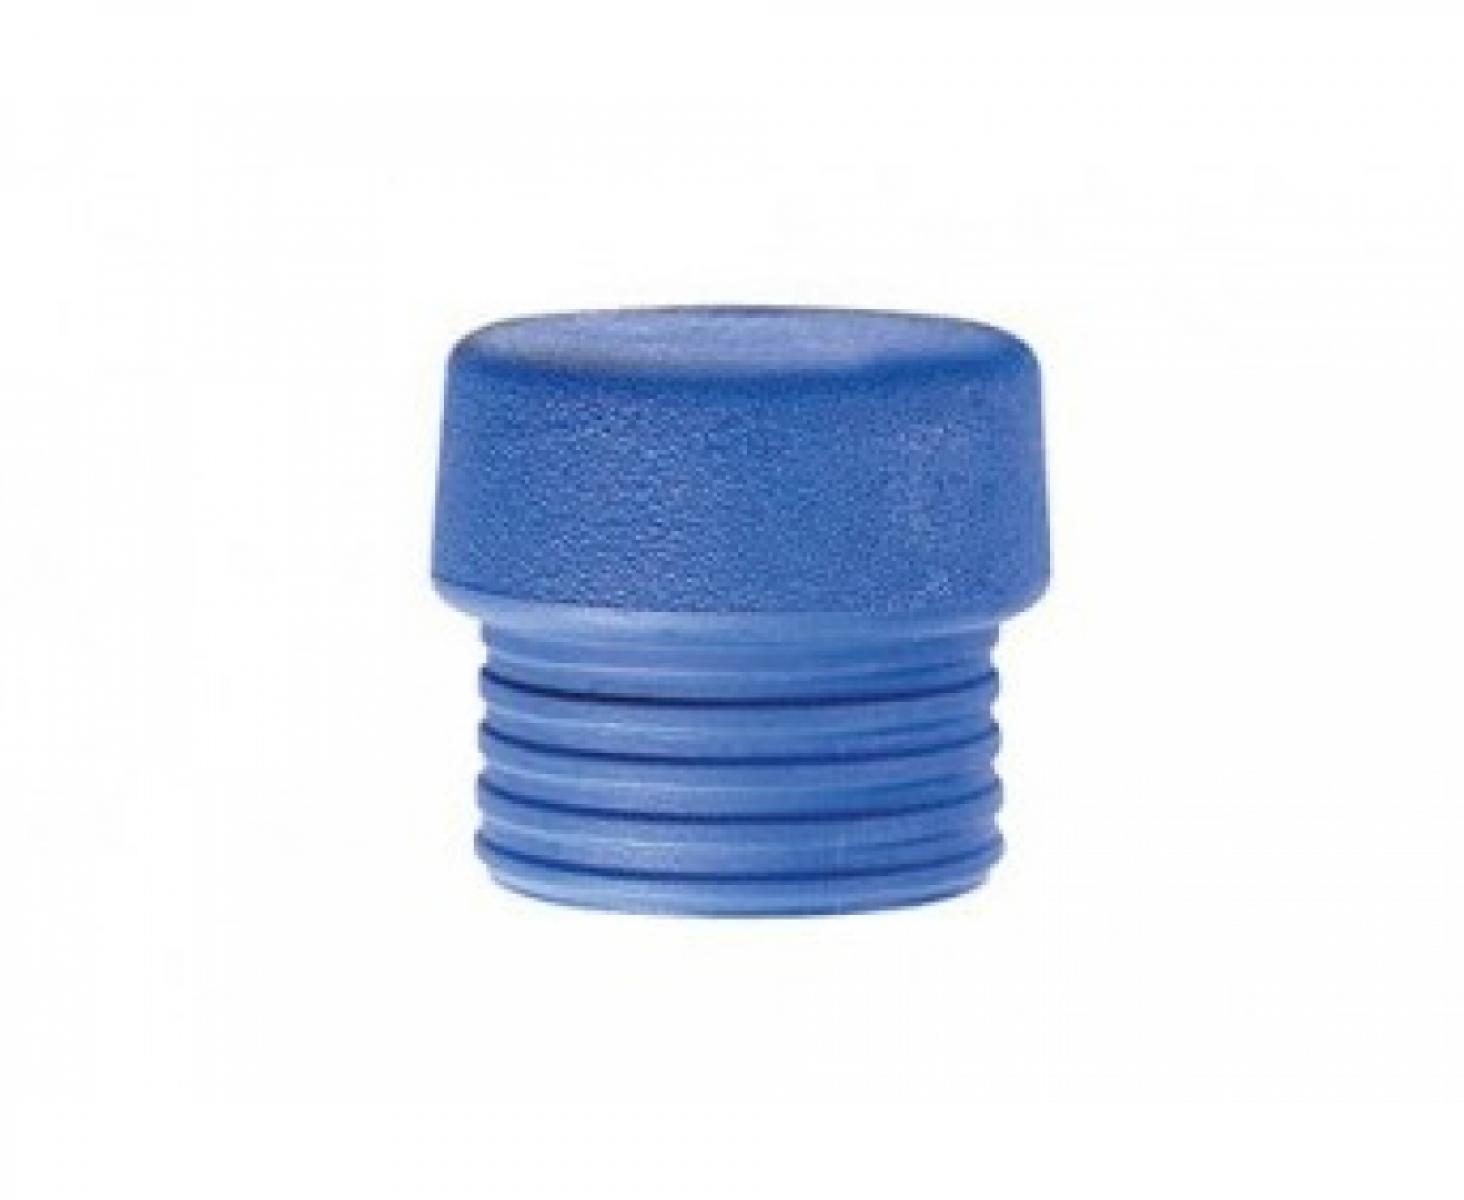 Головка синяя для молотка Wiha Safety 831-1 26664 из мягкого эластомера